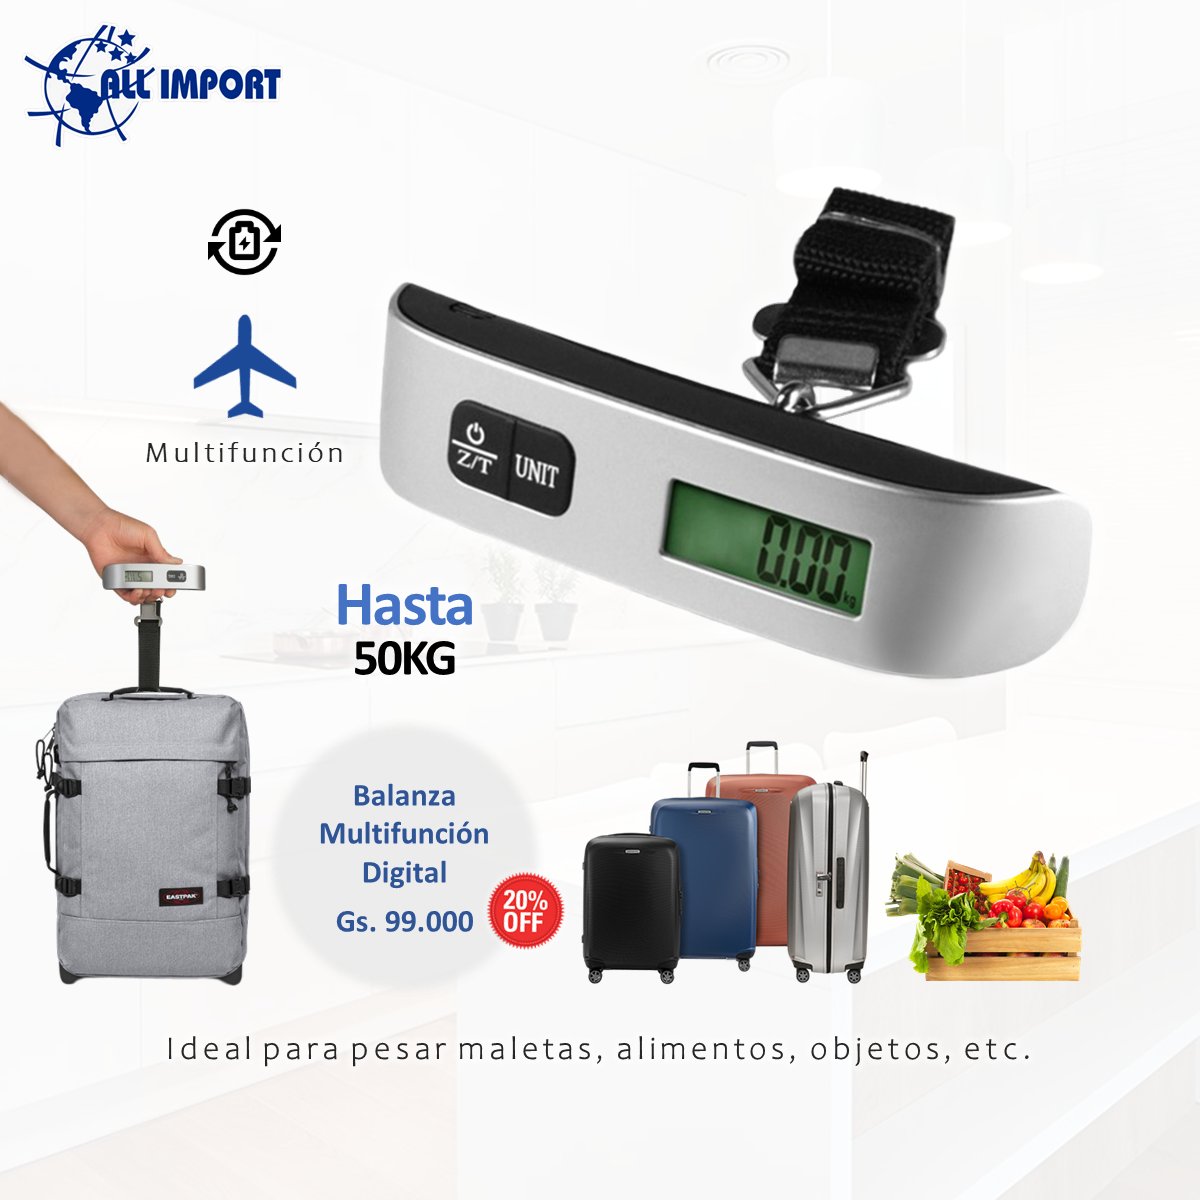 Paraguay Online Shopping - Balanza Digital portatil para Equipaje, para que  la lleves a todos lados y dejes de pagar exceso de equipaje. Sirve para  maletas y equipaje de mano. #equipajedemano #viaje #